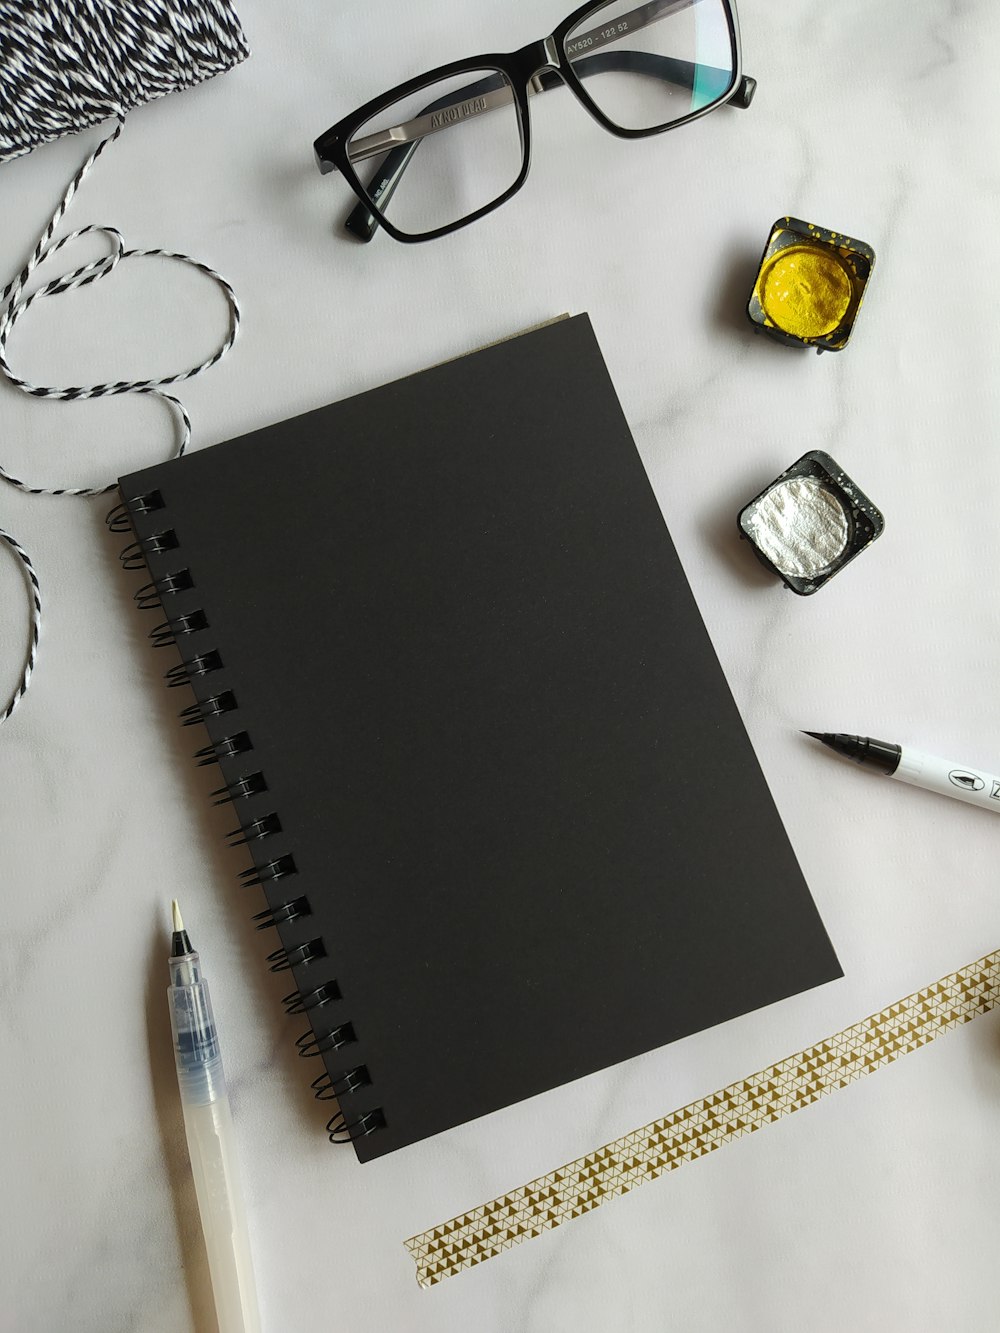 black notebook beside black click pen and black framed eyeglasses